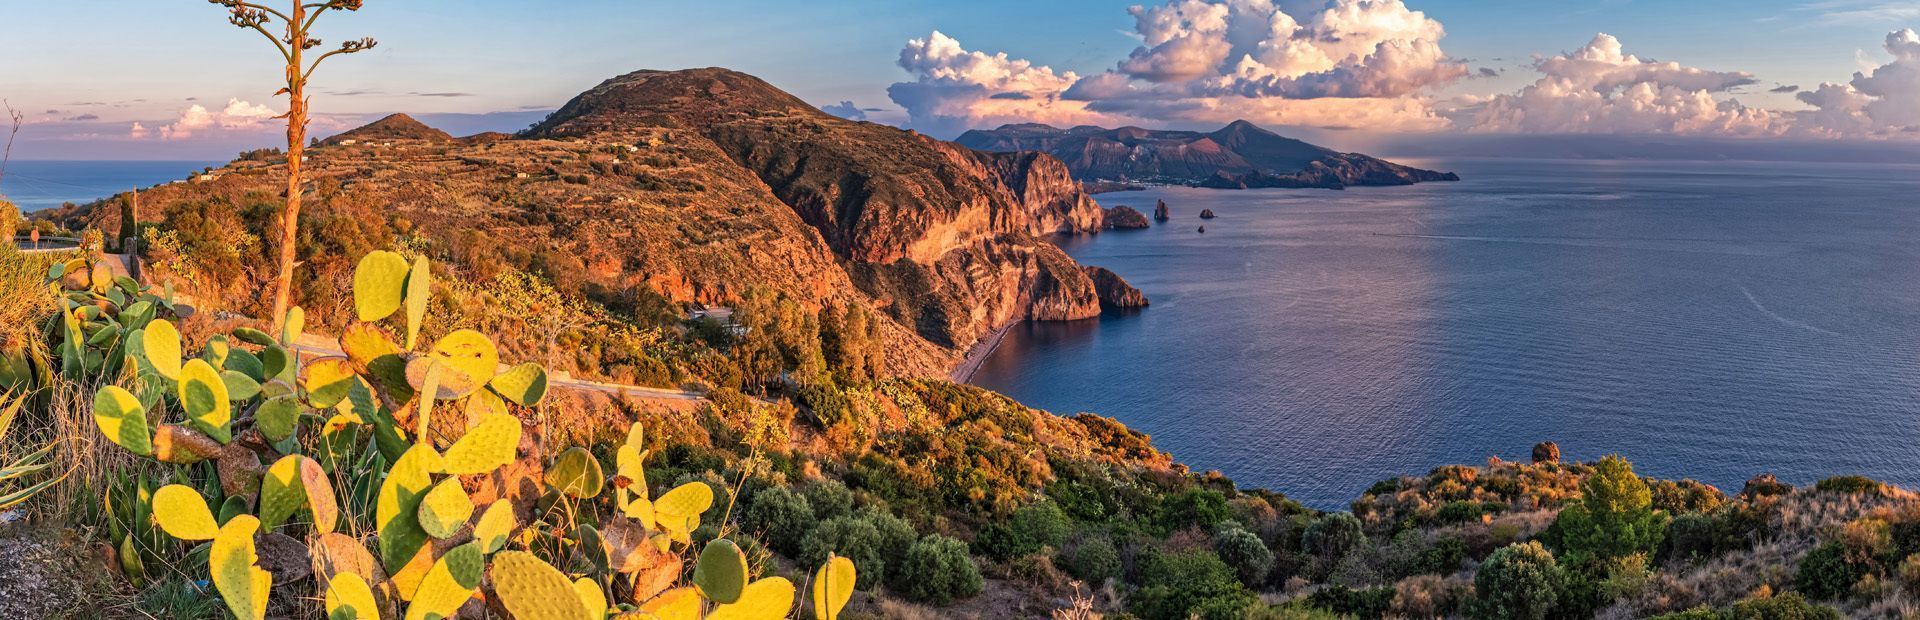 Isole Eolie: Lipari e le perle vulcaniche del Mediterraneo